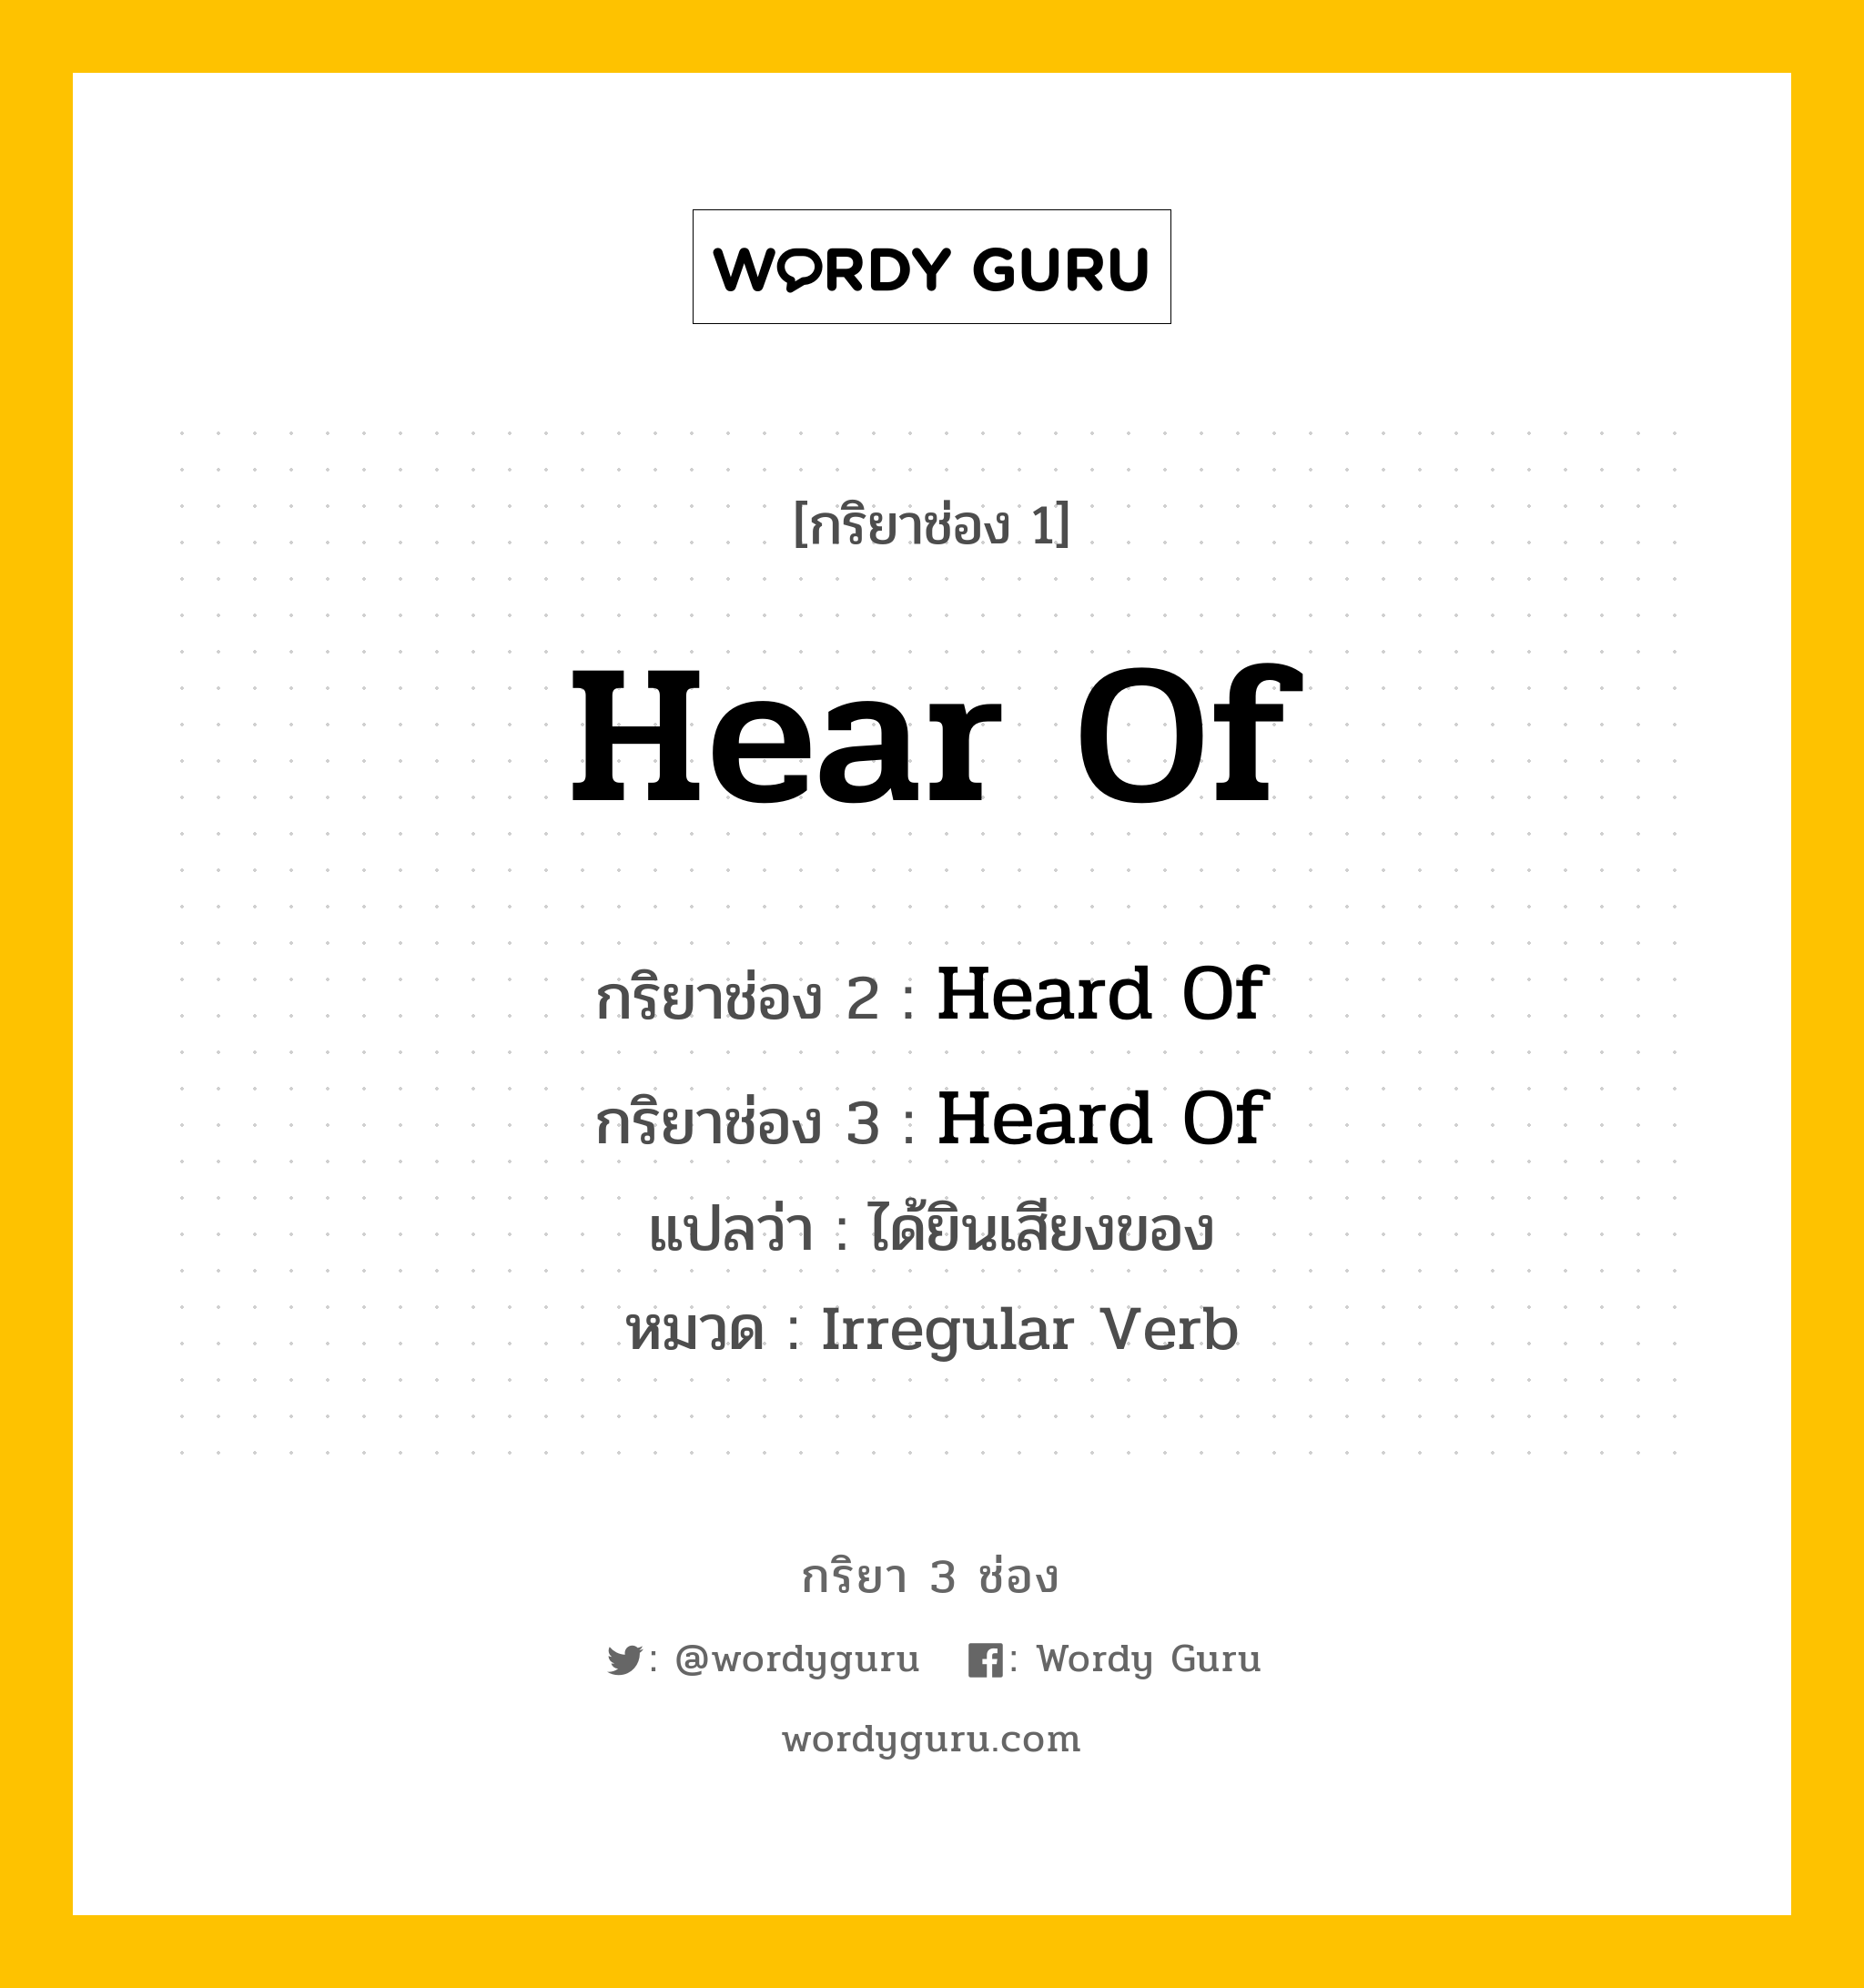 กริยา 3 ช่อง ของ Hear Of คืออะไร? มาดูคำอ่าน คำแปลกันเลย, กริยาช่อง 1 Hear Of กริยาช่อง 2 Heard Of กริยาช่อง 3 Heard Of แปลว่า ได้ยินเสียงของ หมวด Irregular Verb หมวด Irregular Verb